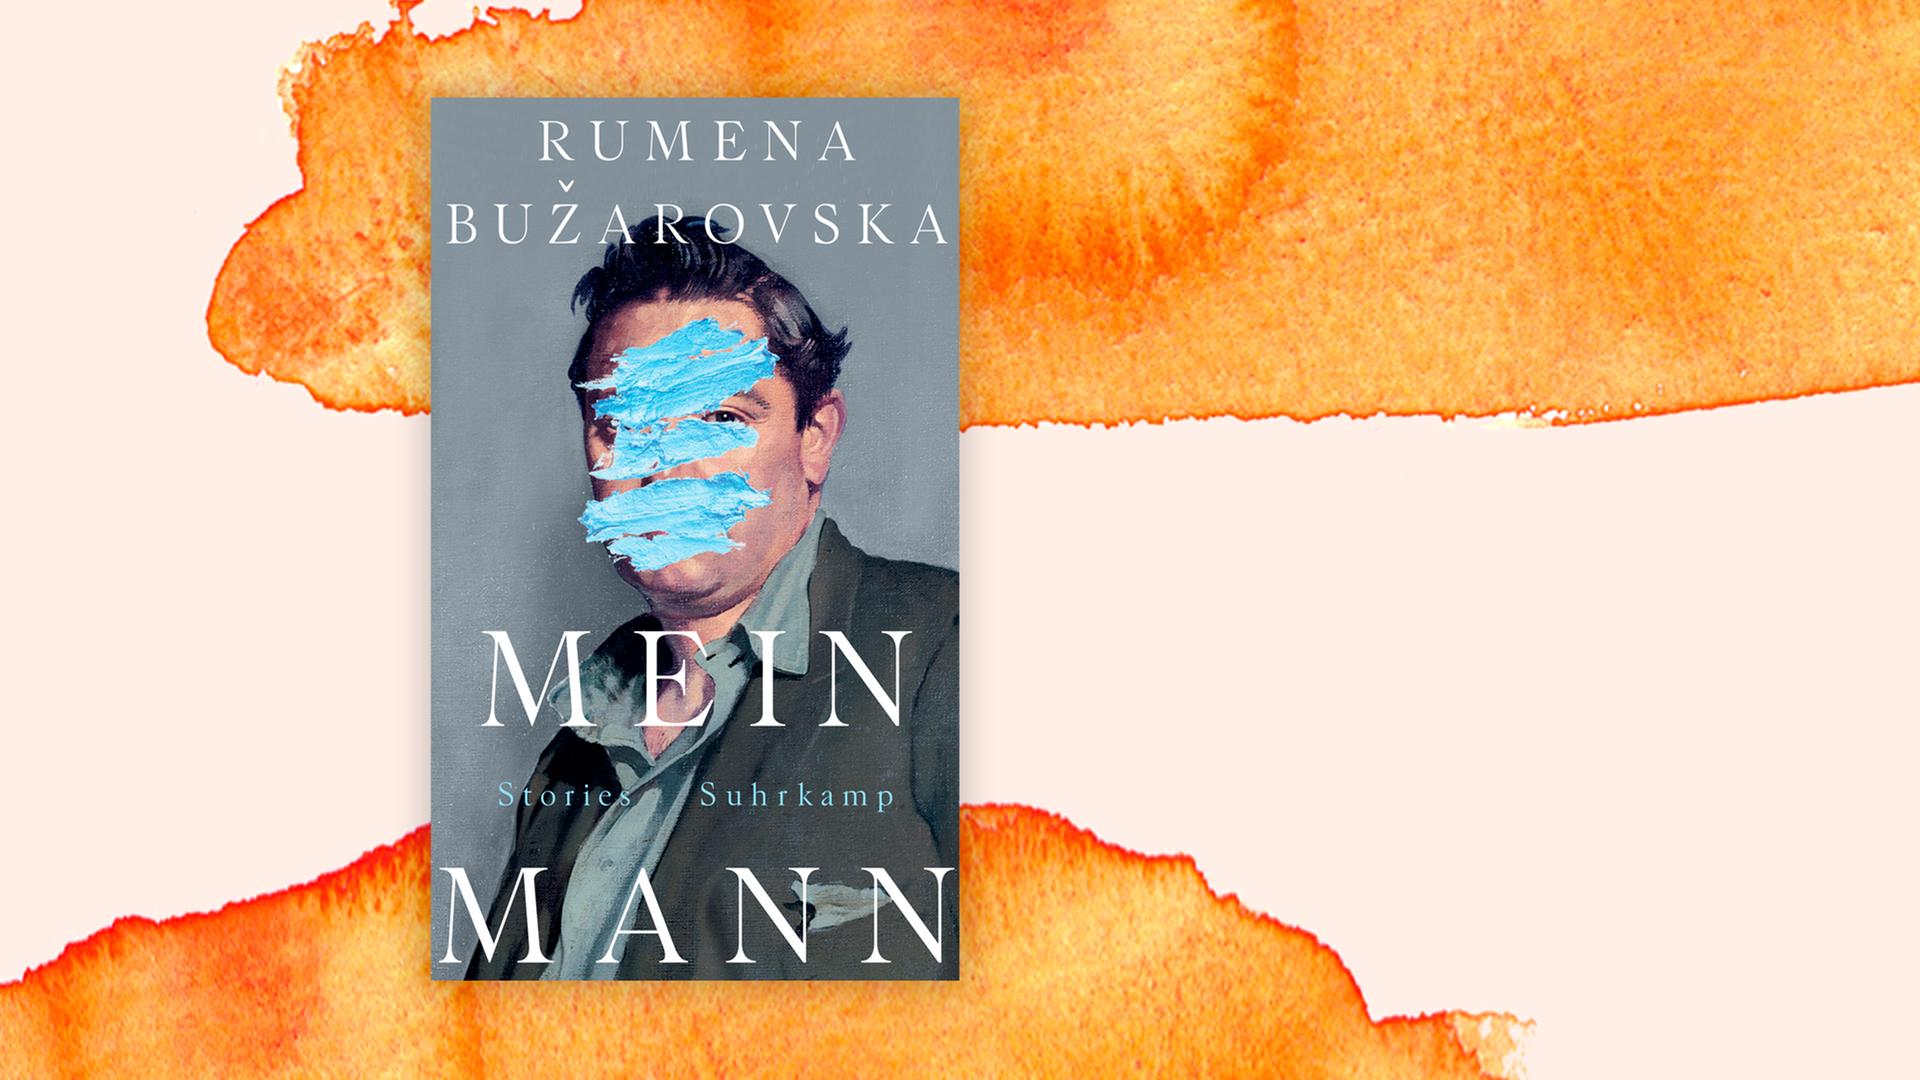 Das Buchcover "Mein Mann" mit der Darstellung eines Männerporträts, das mit blauen Farbstrichen übermalt wurde, vor einem grafischen Hintergrund.